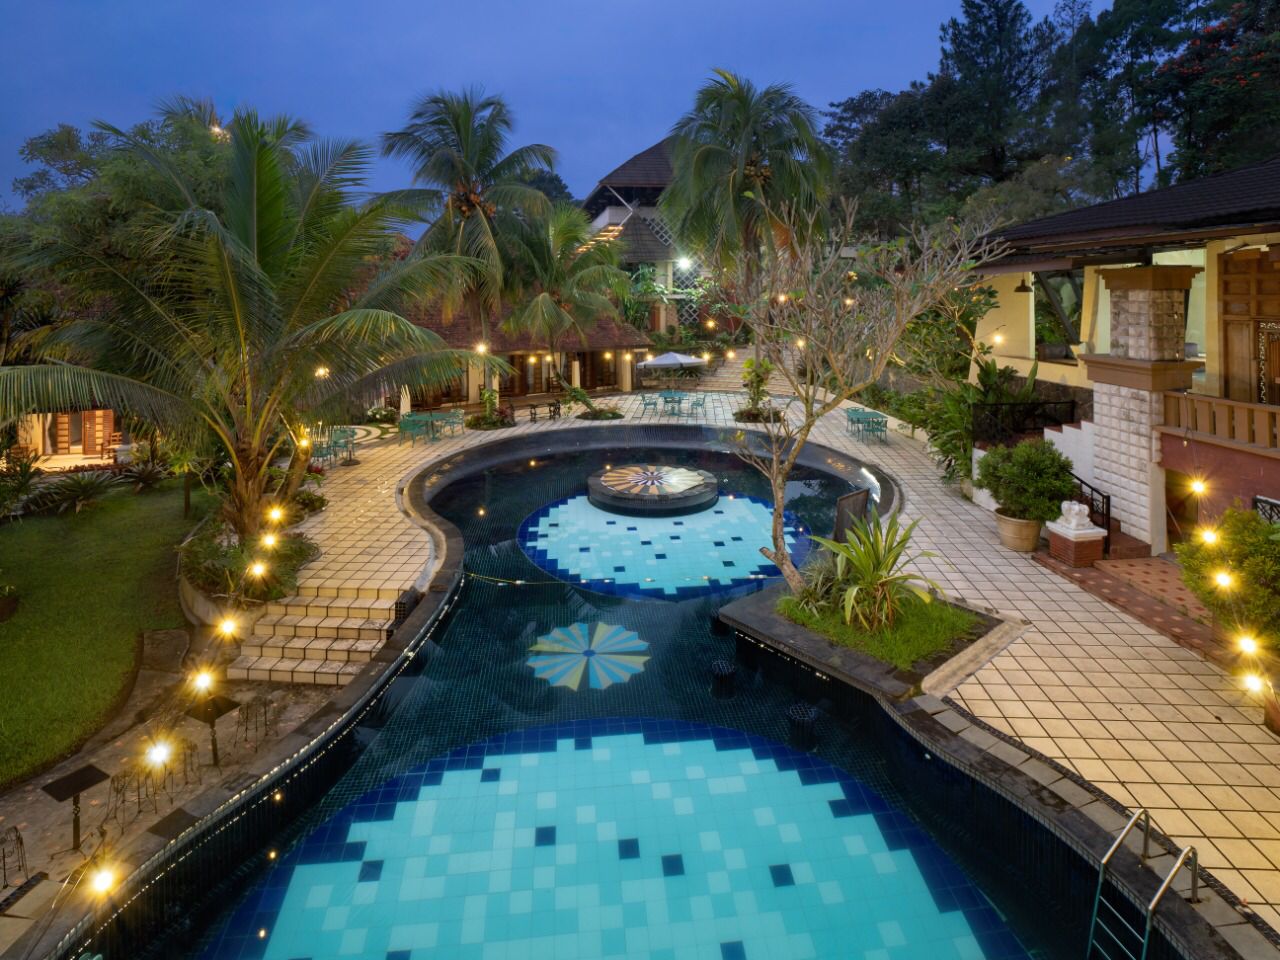 Waringin Hospitality Buka Resort Baru di Kota Bogor